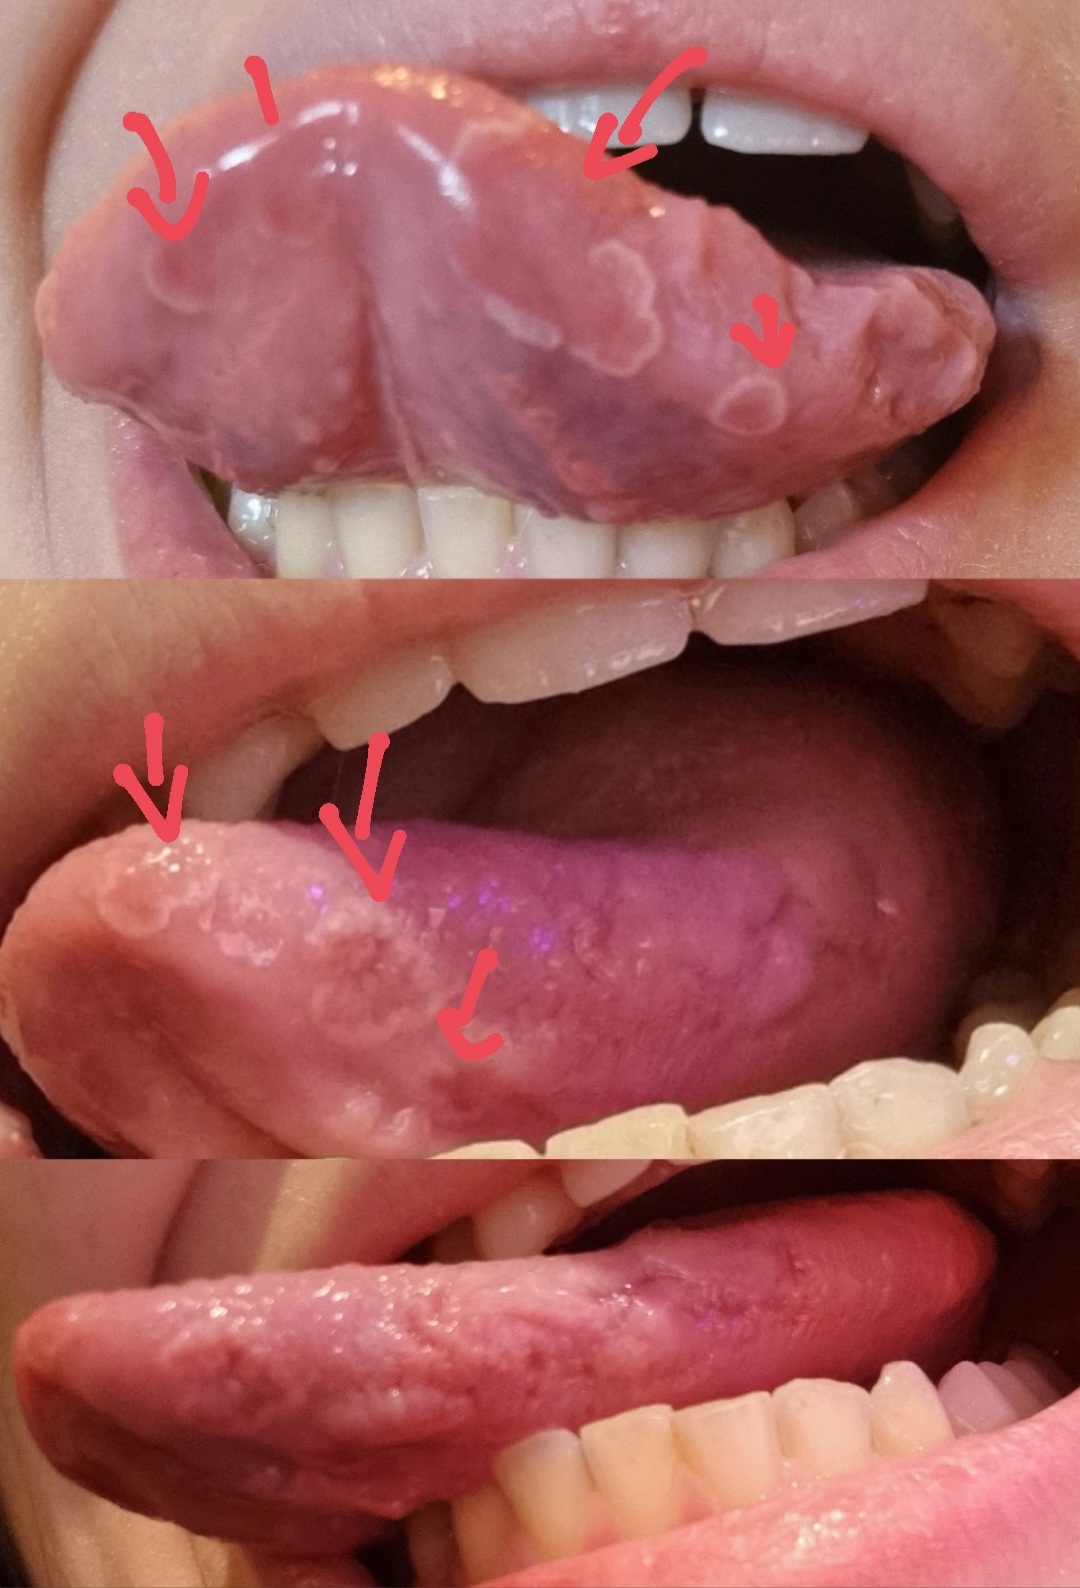 C'Ã¨ qualcosa che posso fare per proteggere anche di piÃ¹ la lingua dai denti?